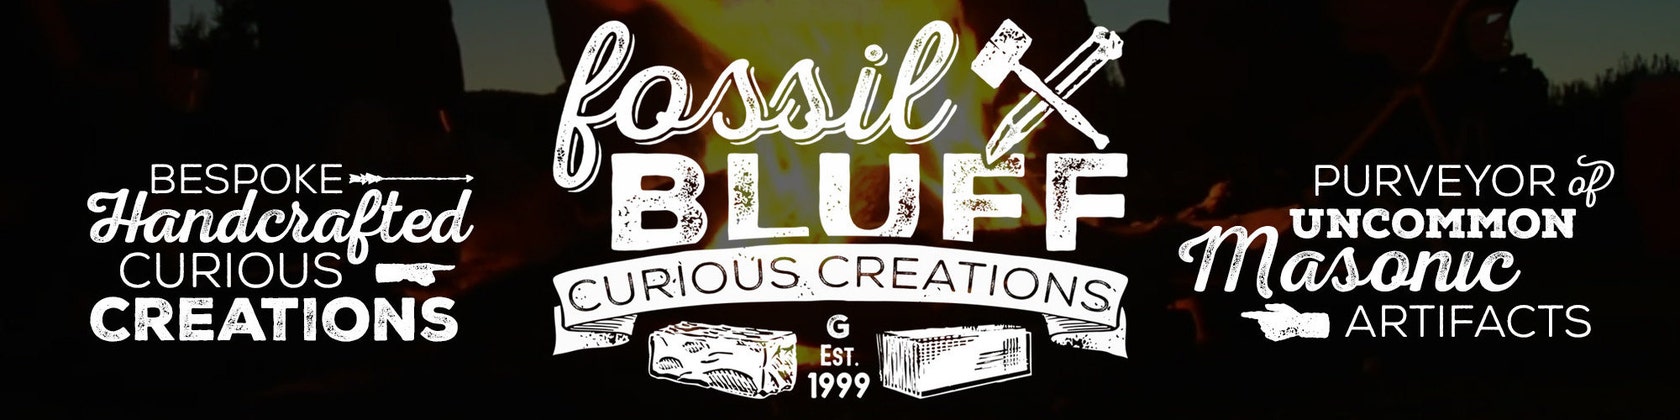 Masonic Auto Emblem - Fossil Bluff